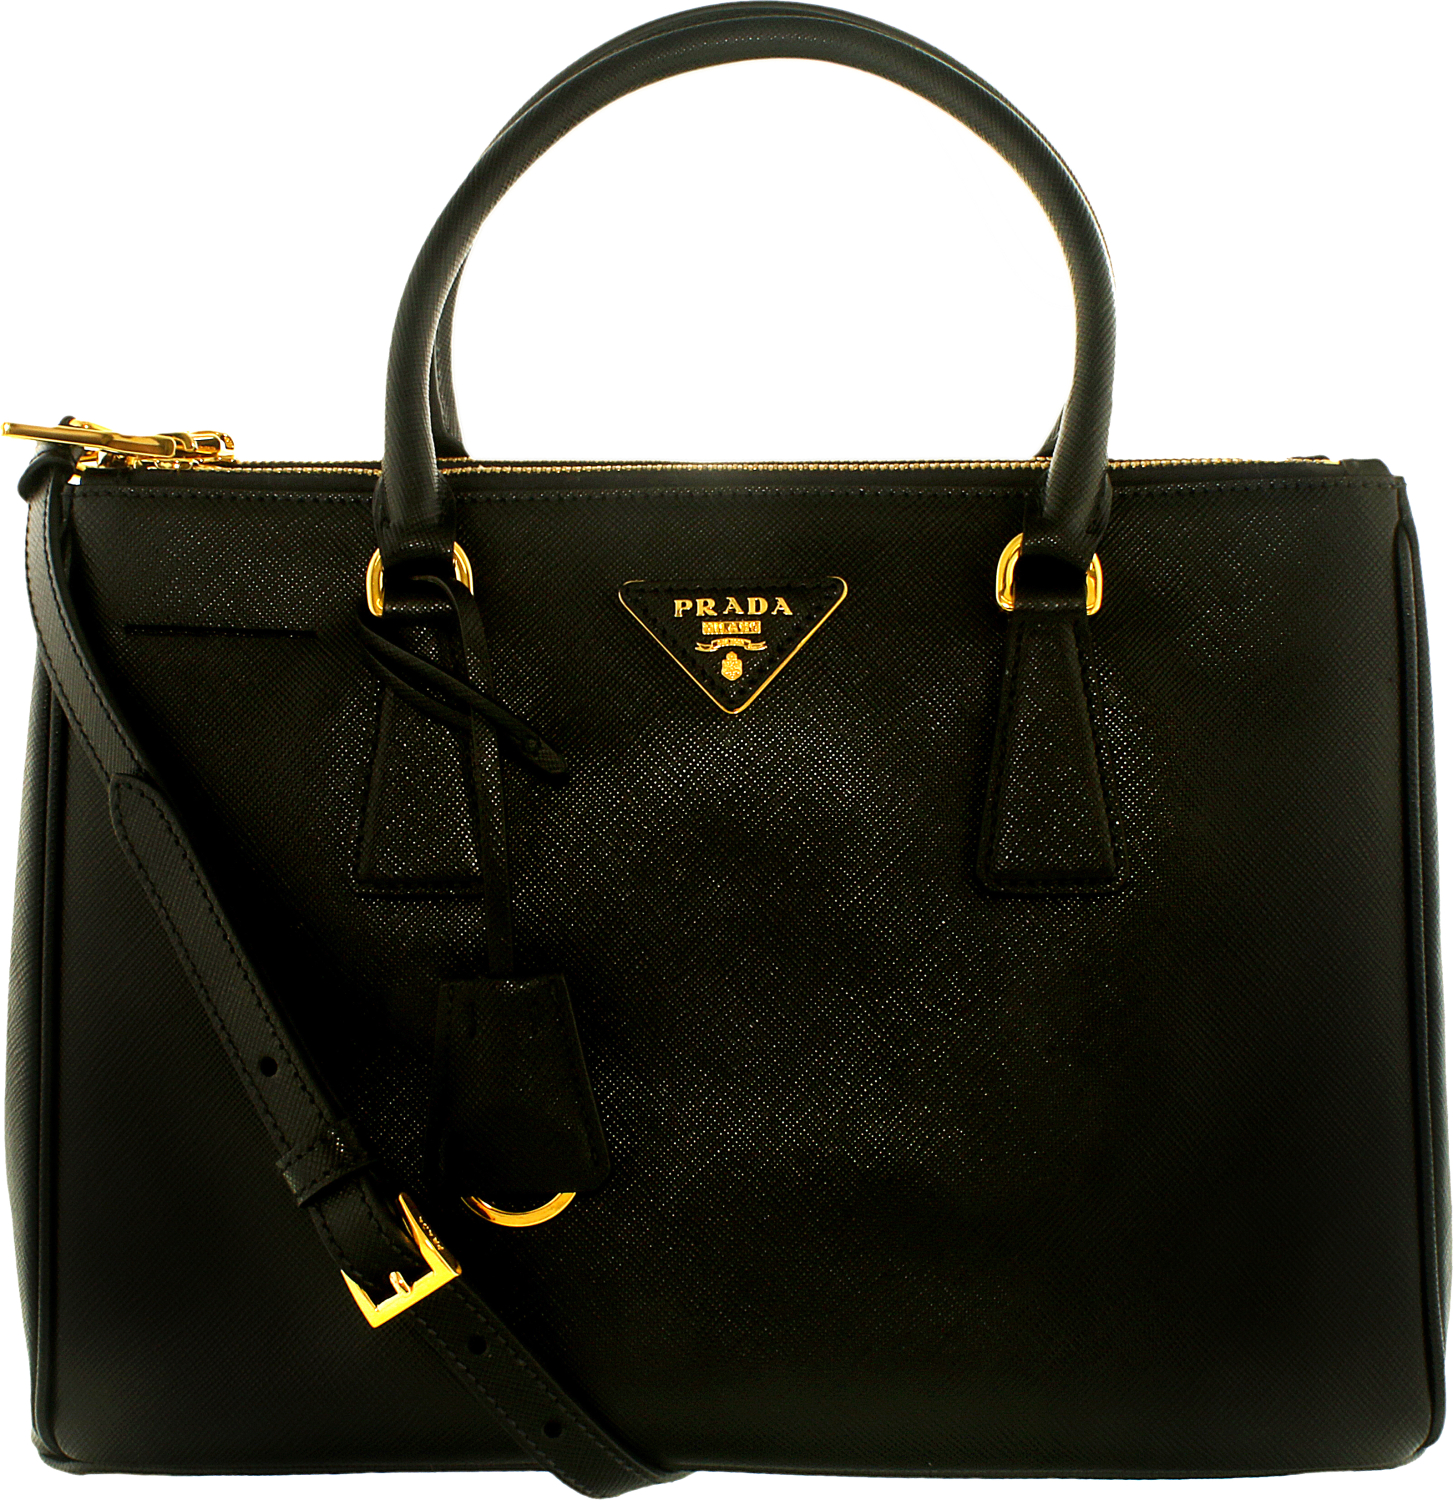 Prada Bags For Women | Jaguar Clubs of North America